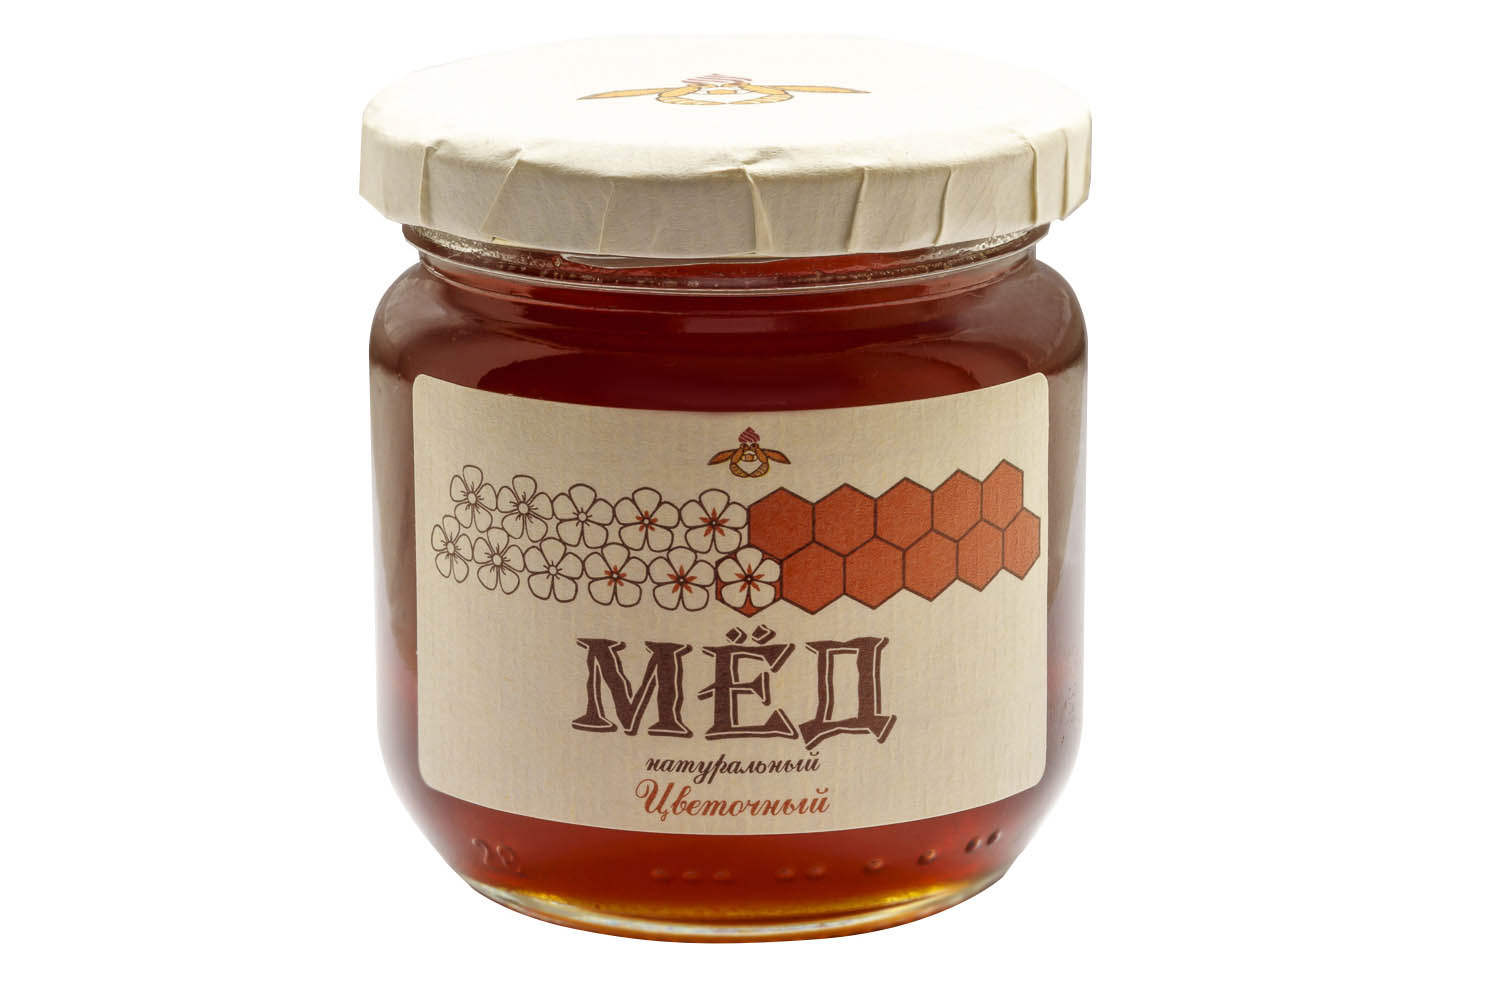 Дом меда отзывы. Мёд горный. Мед домашний. Мёд цветочный 1 кг. Майский горный мед.